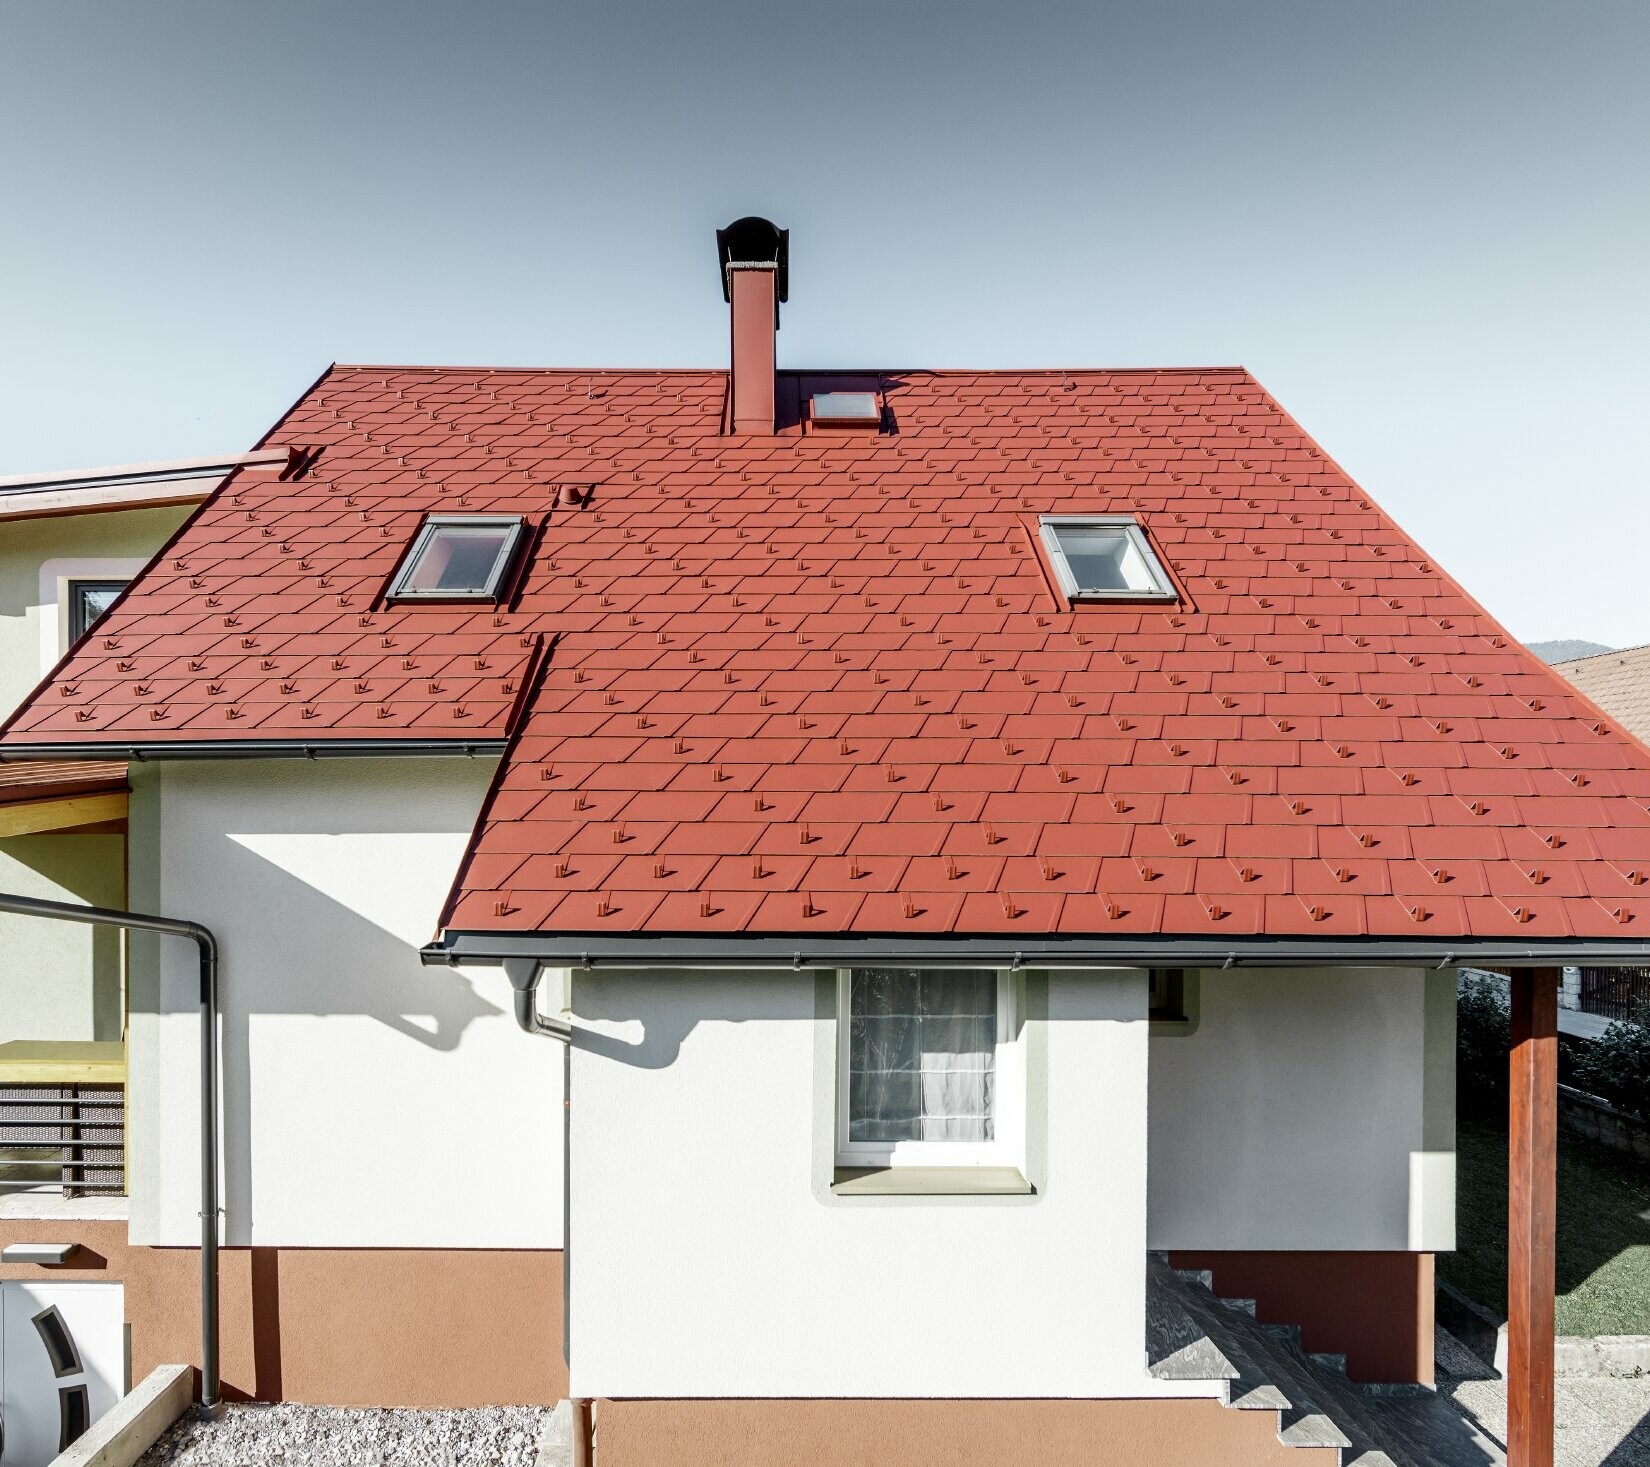 Casa unifamiliare ristrutturata con il nuovo tetto con scandola PREFA, la DS.19 è stata posata nel colore rosso ossido.